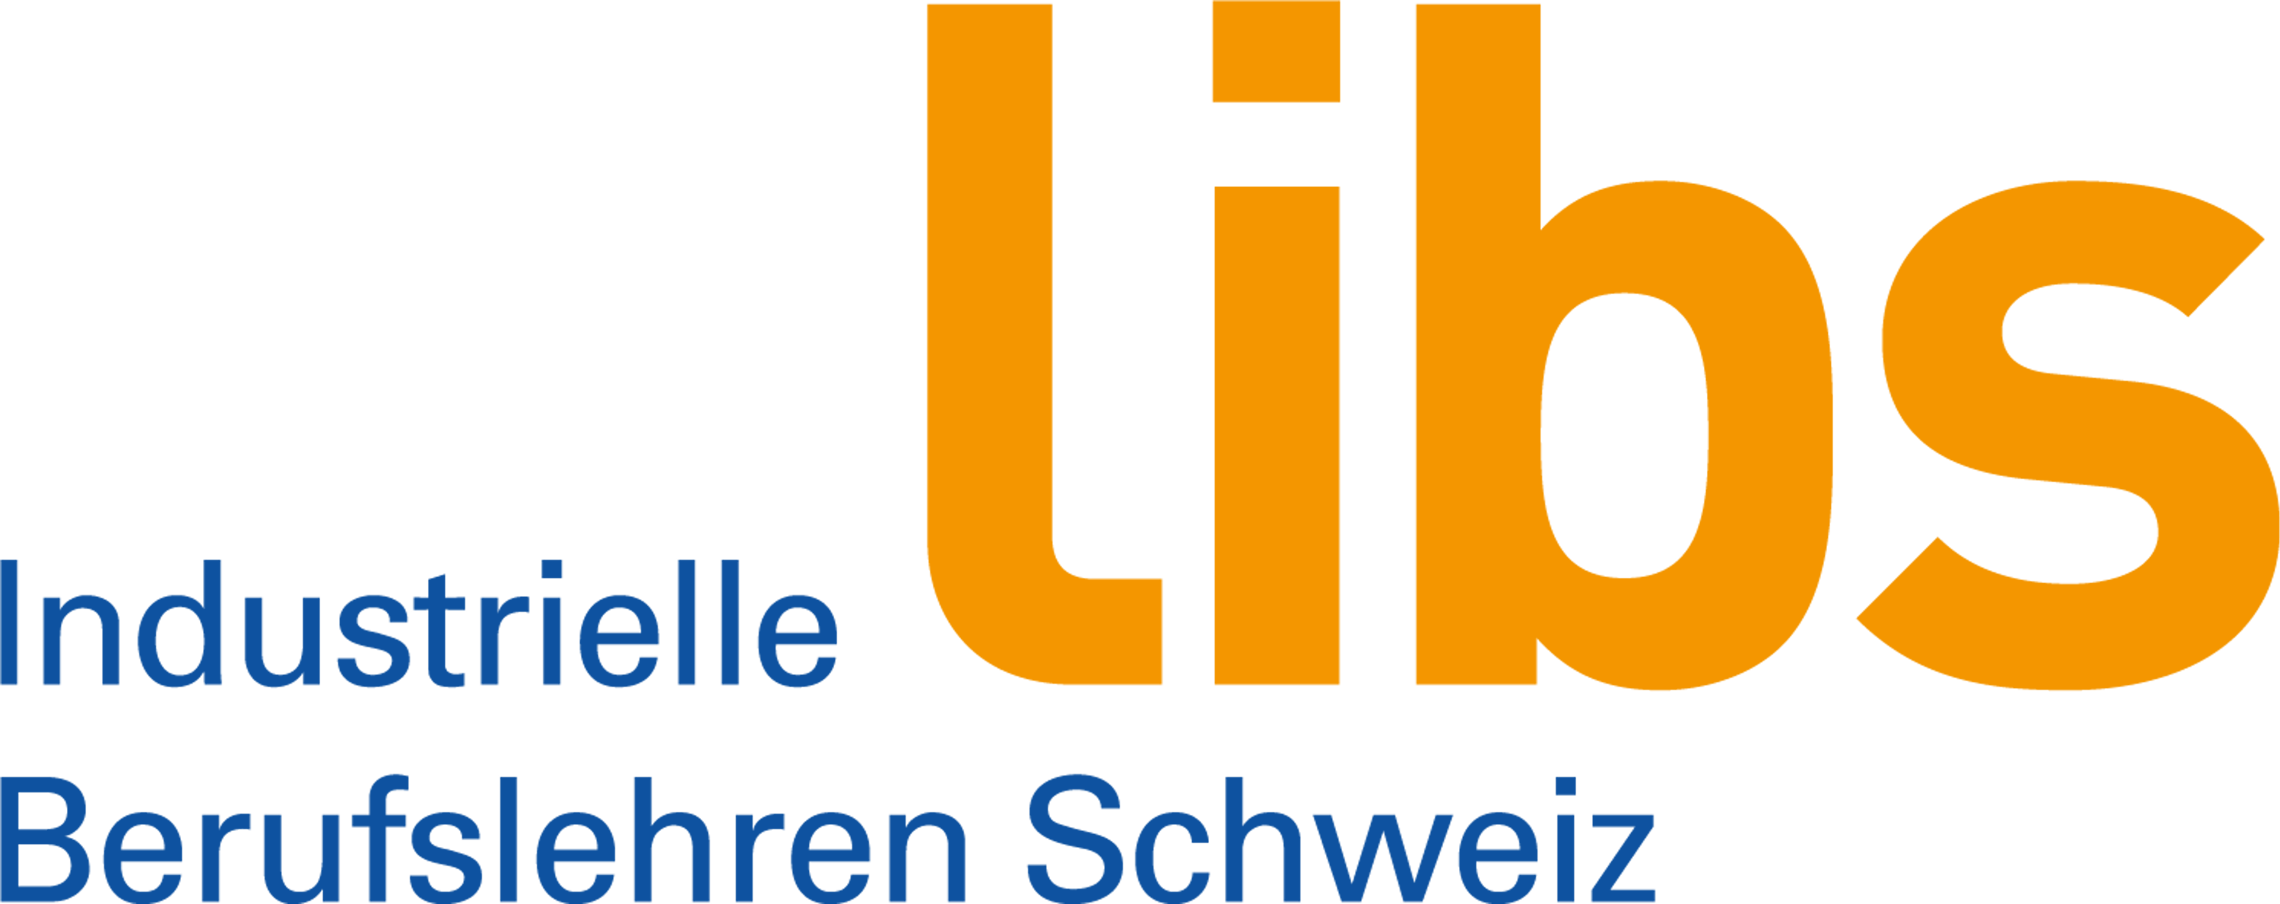 Libs Industrielle Berufslehren Schweiz